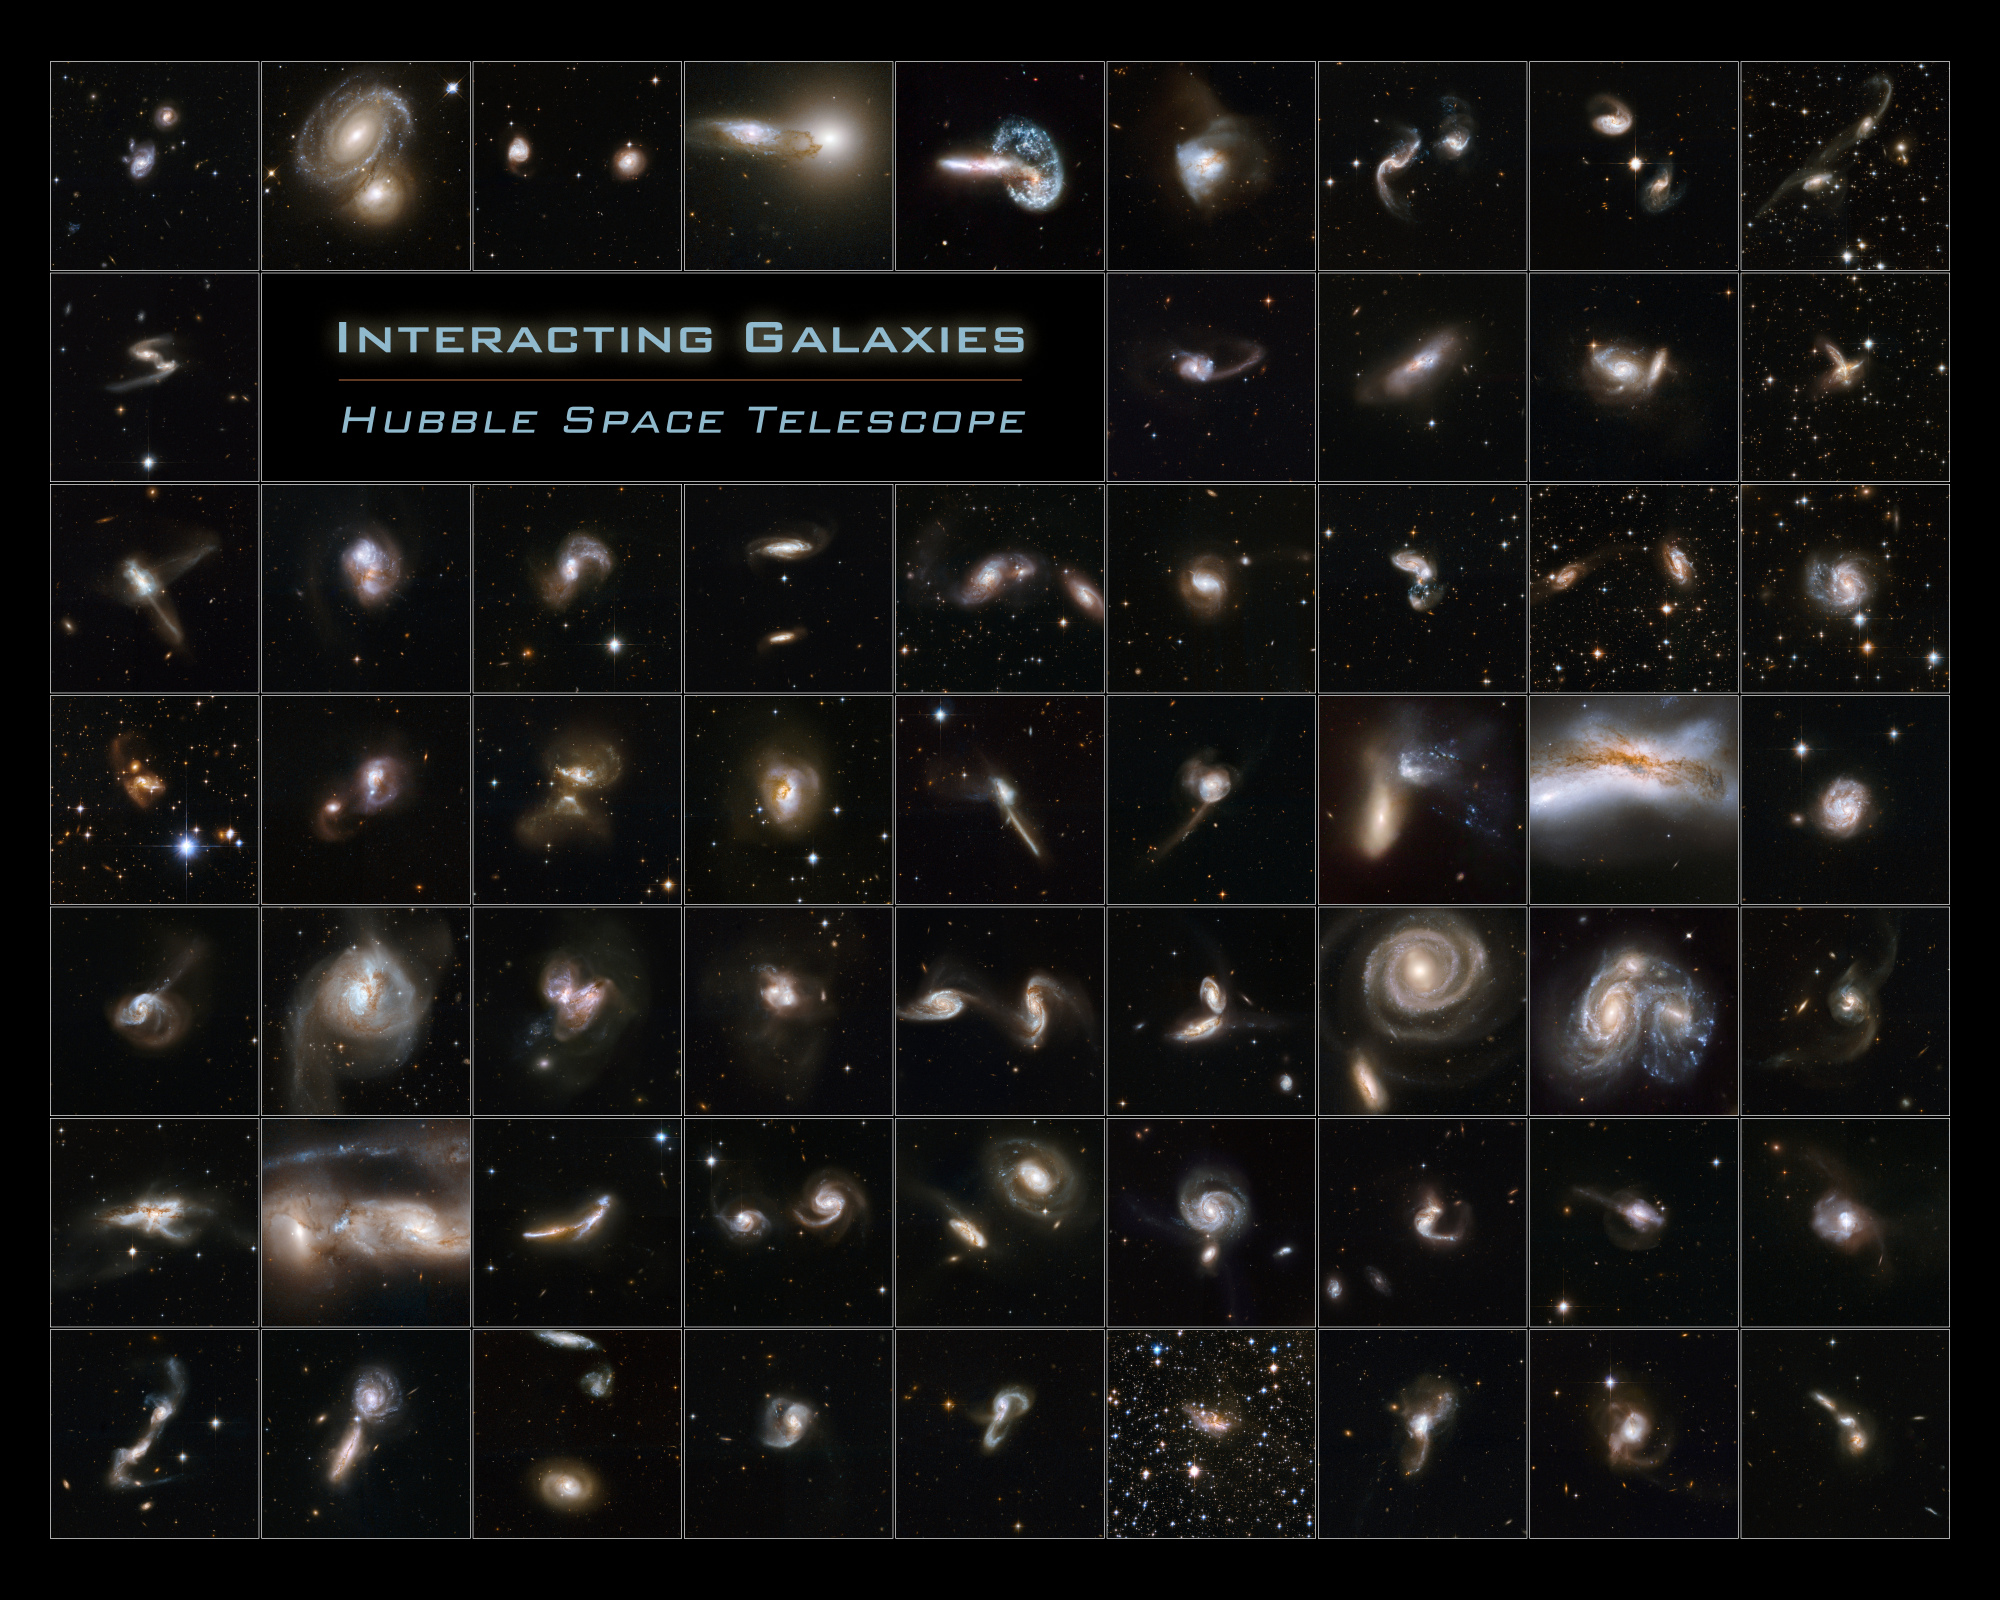 galaxies en interaction.jpg